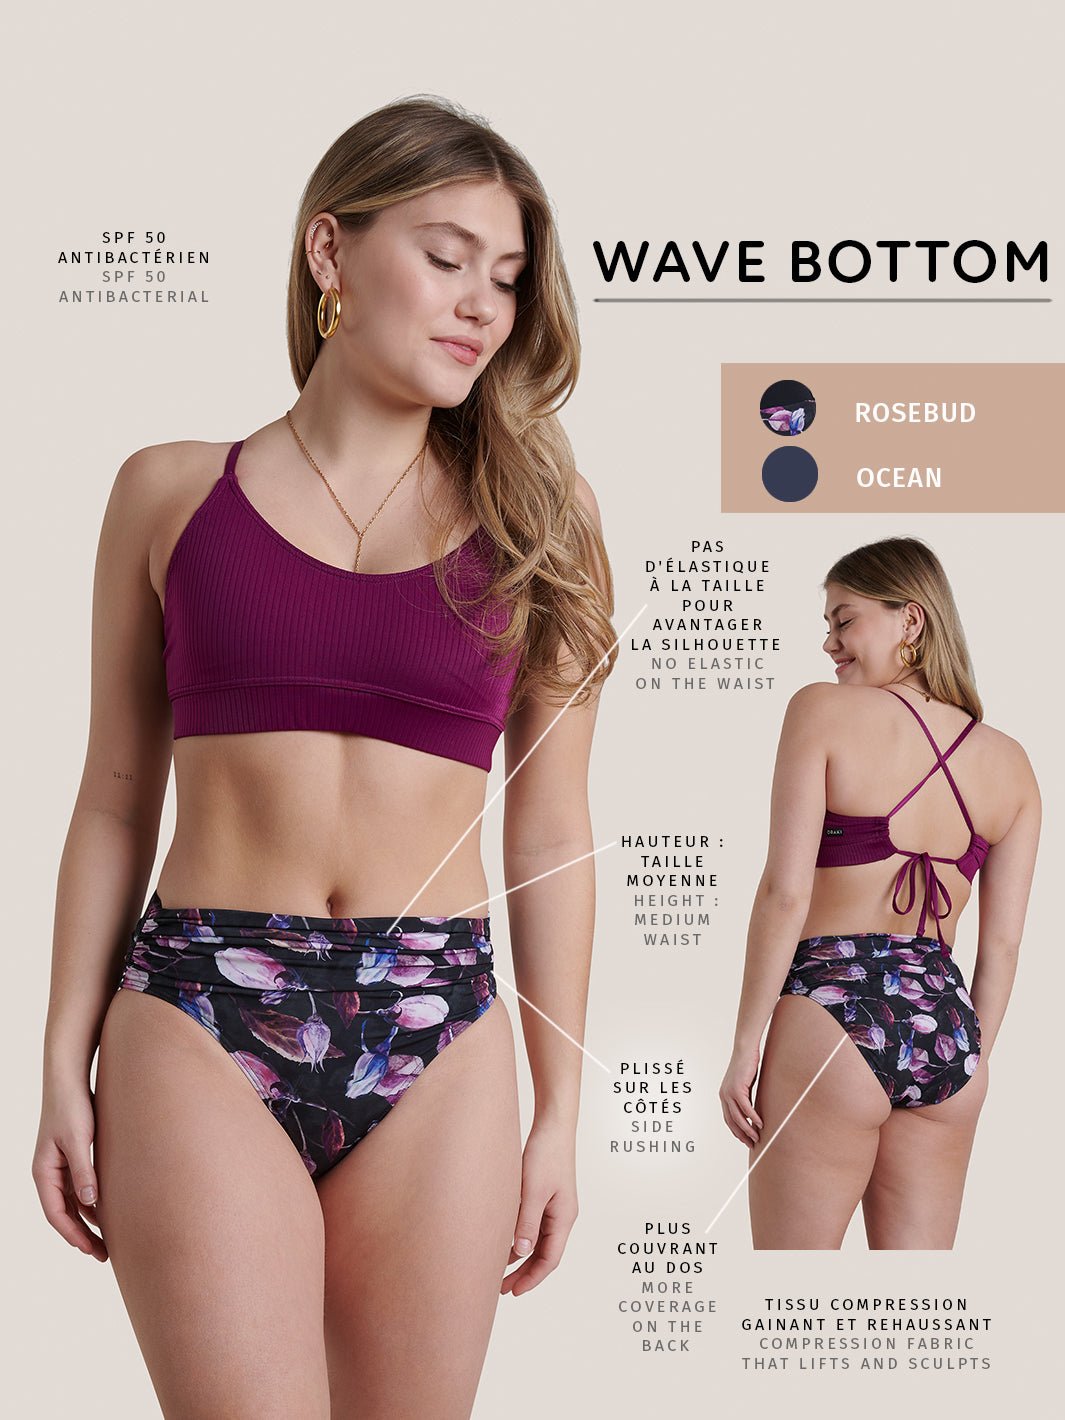 Wave Bottom - Rosebud